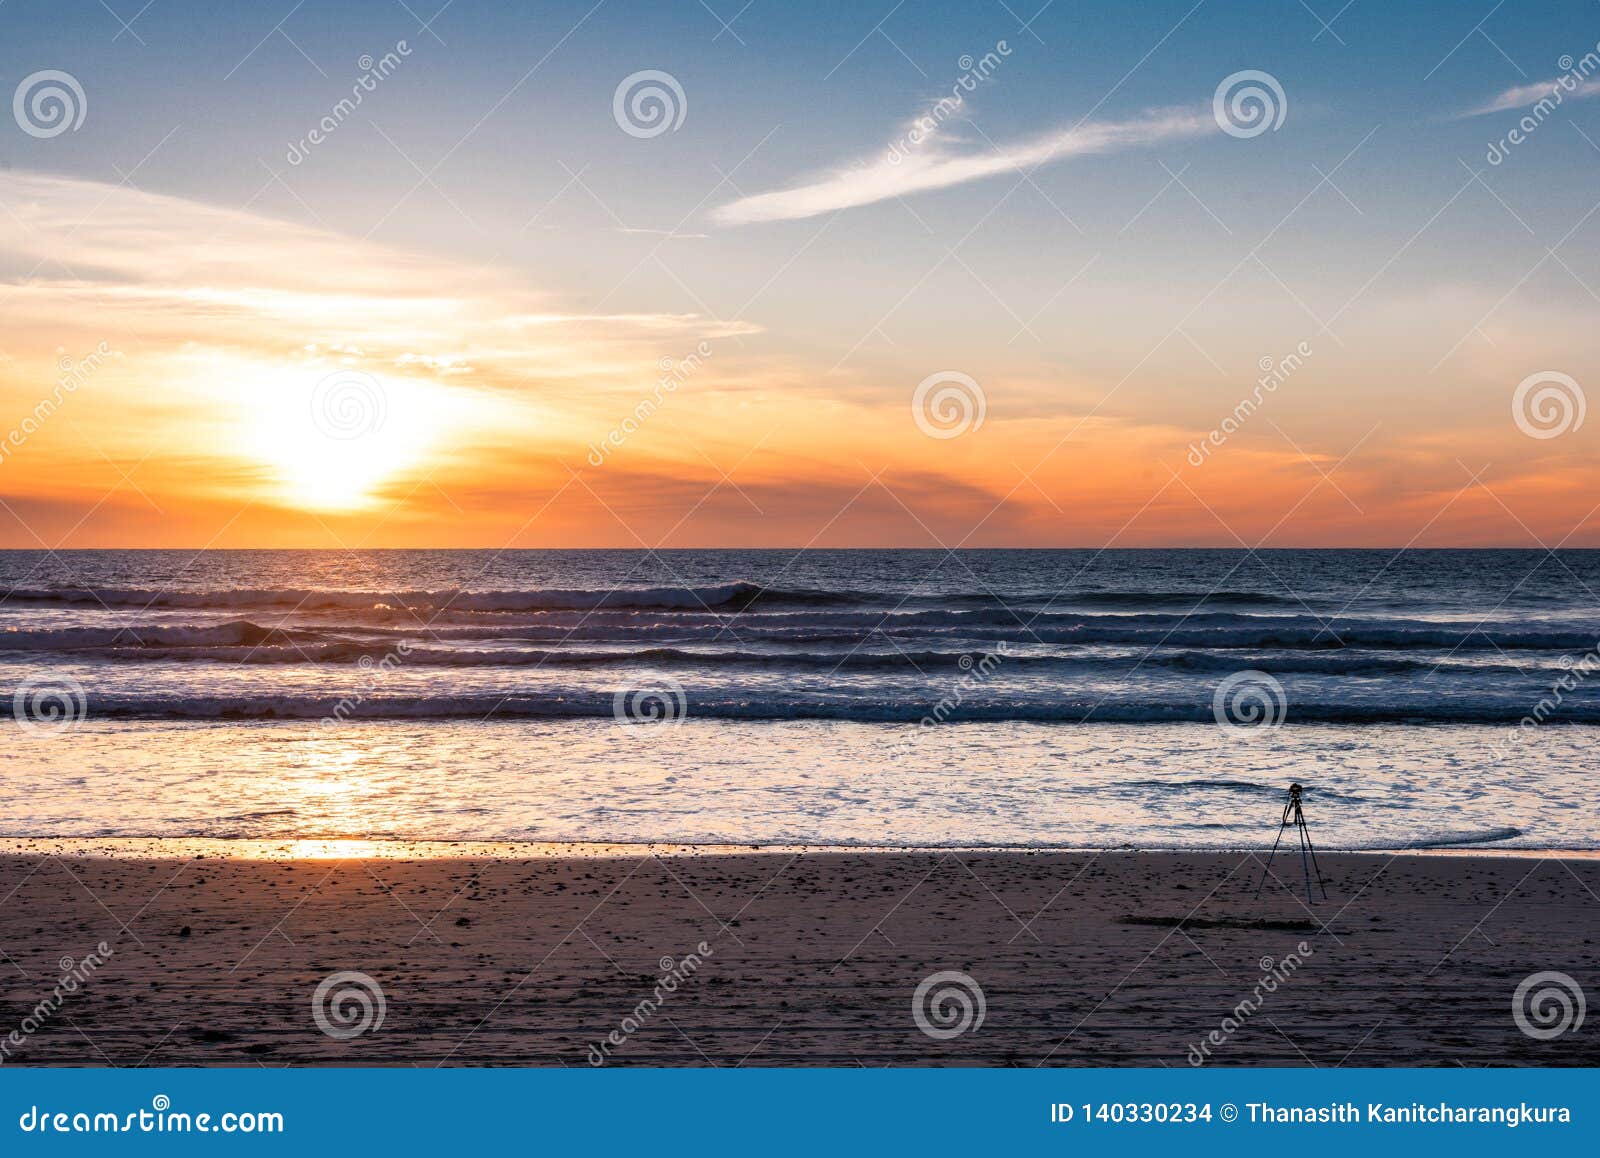 Macchina fotografica con il tramonto della fucilazione del treppiede alla spiaggia con il bello tramonto alla spiaggia del nero, San Diego, California